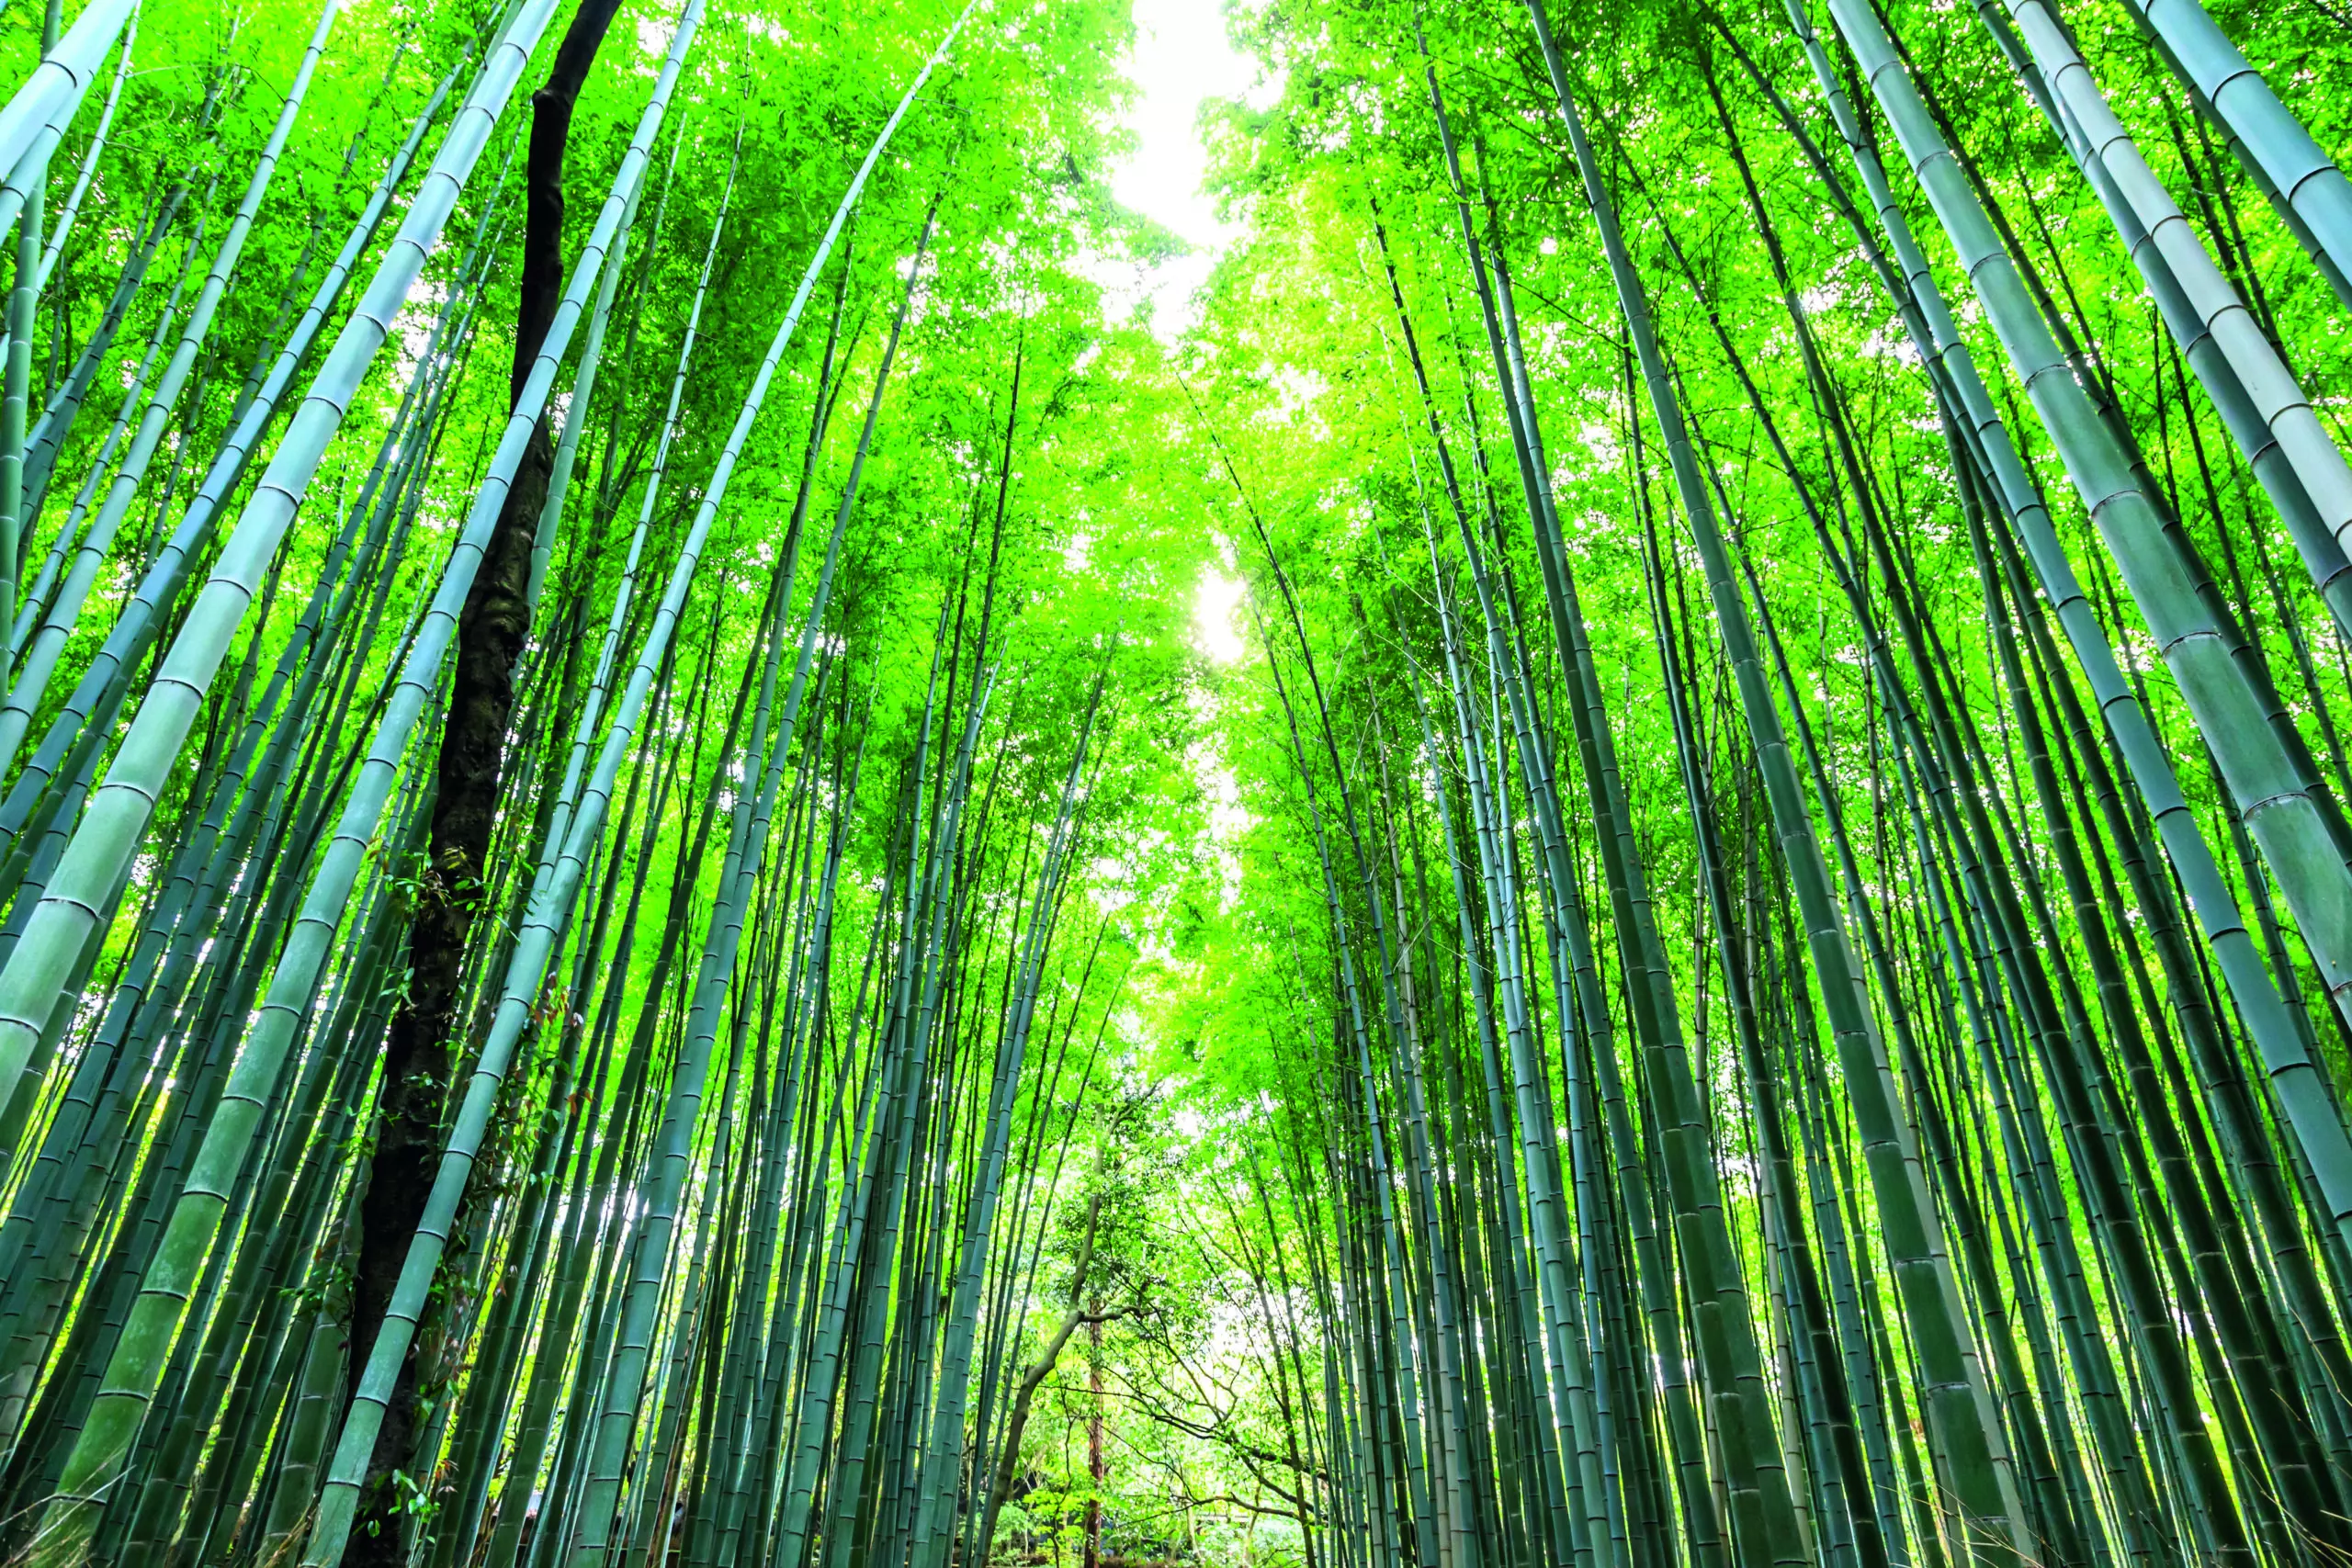 Wandbild (5395) Arashiyama forest by Maurizio Rellini/HUBER IMAGES präsentiert: Details und Strukturen,Natur,Landschaften,Sonstige Pflanzen,Parkanlagen und Gärten,Wälder,Asien,Detailaufnahmen,Sonstige Naturdetails,Pflanzen